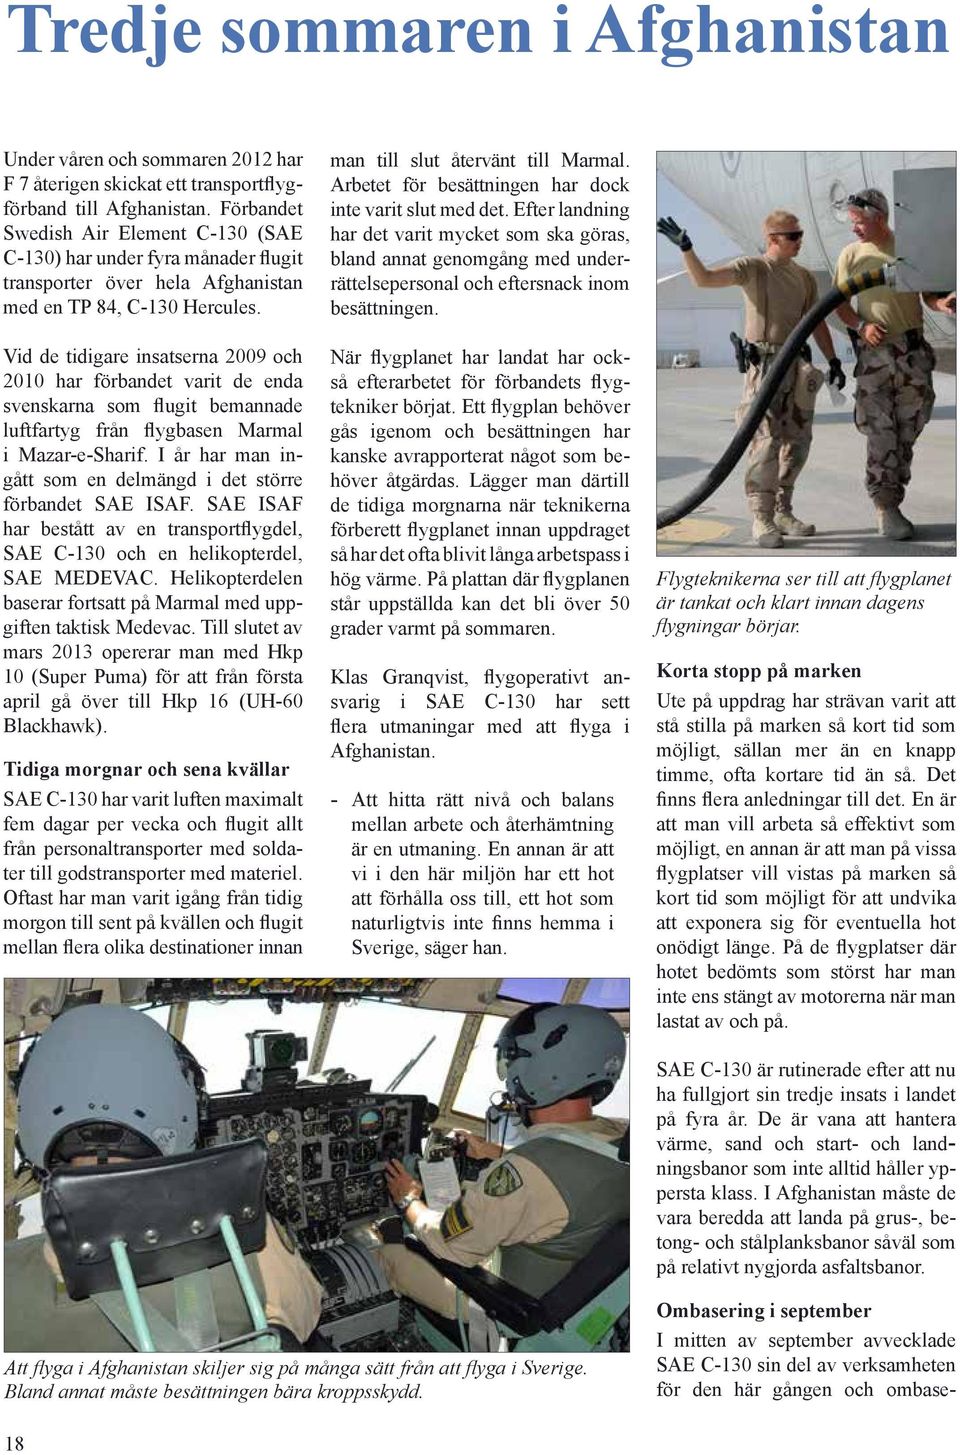 Vid de tidigare insatserna 2009 och 2010 har förbandet varit de enda svenskarna som flugit bemannade luftfartyg från flygbasen Marmal i Mazar-e-Sharif.